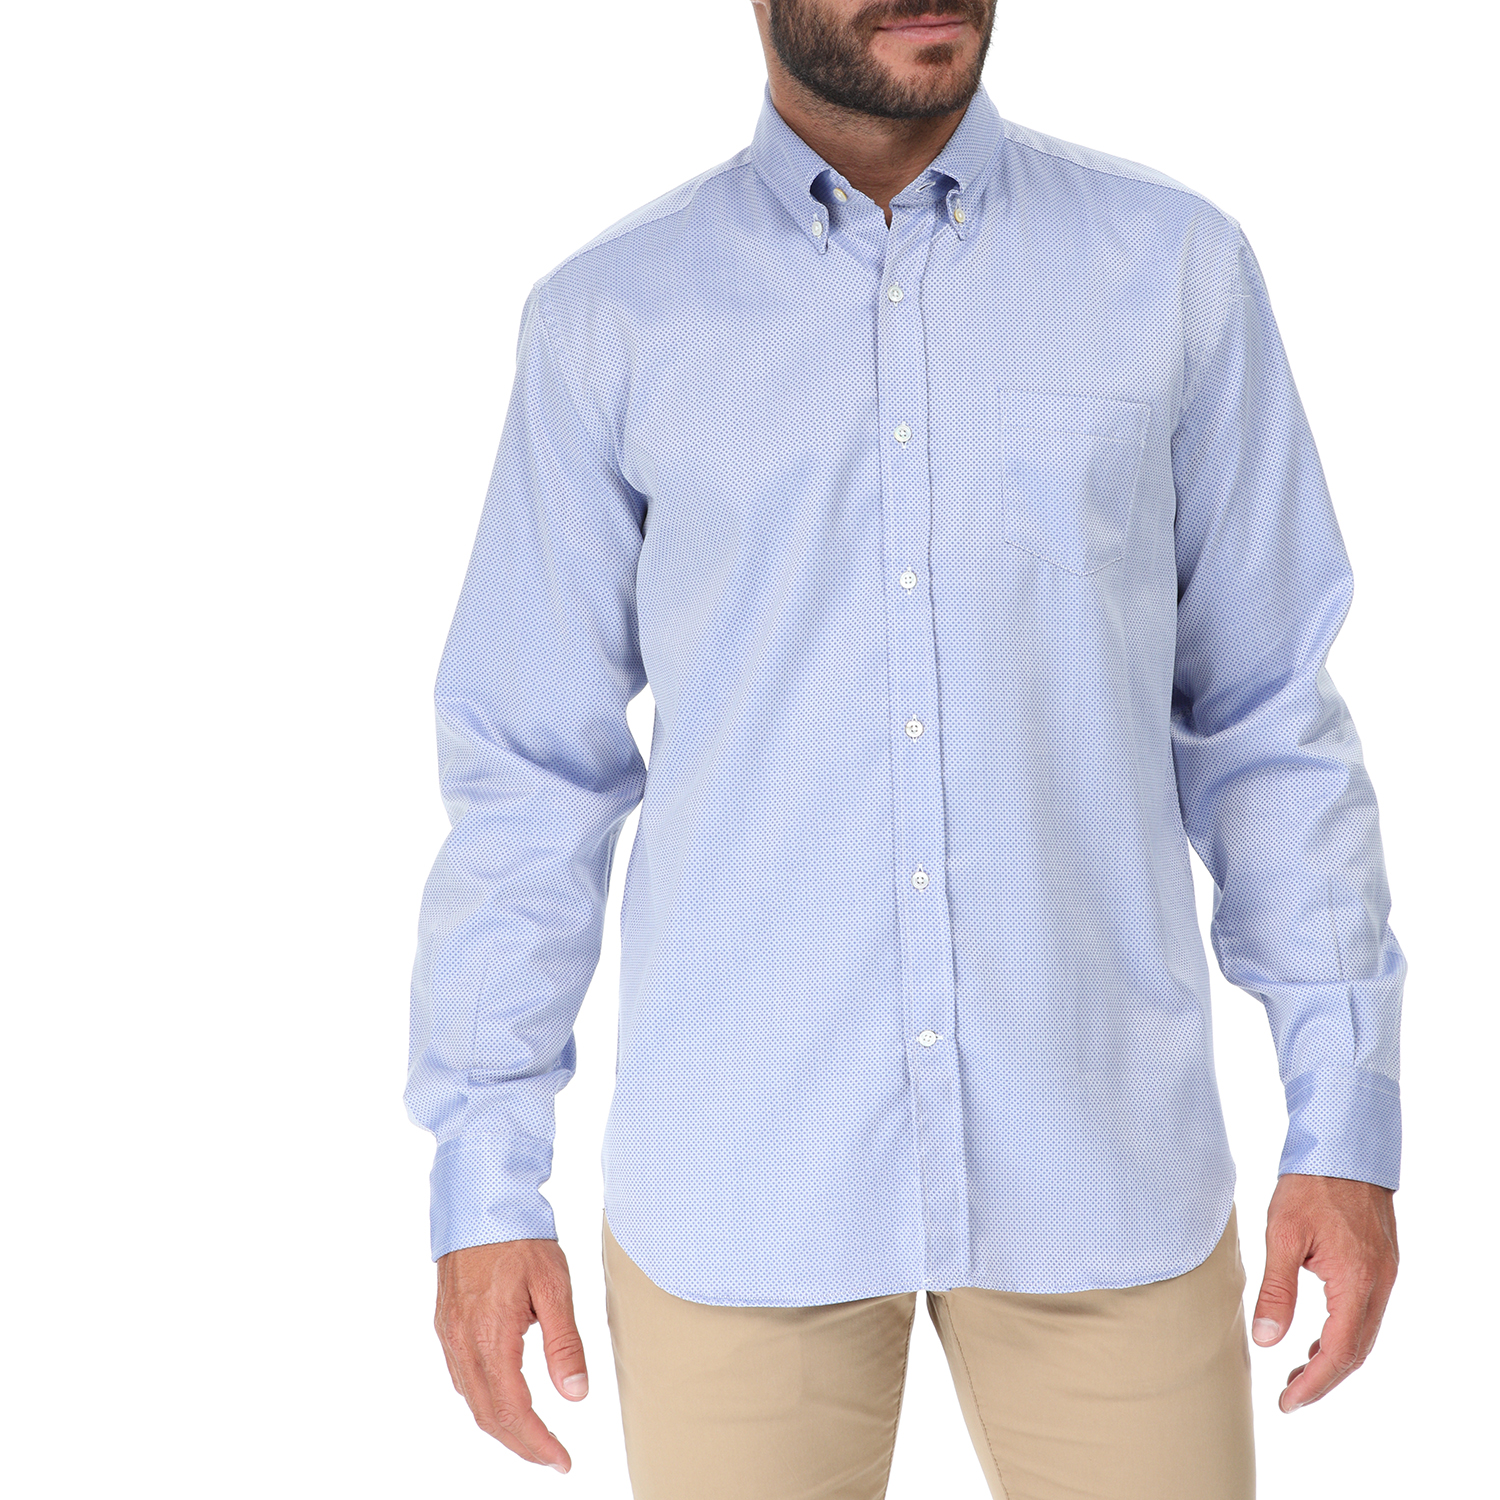 Ανδρικά/Ρούχα/Πουκάμισα/Μακρυμάνικα BROOKSFIELD - Ανδρικό πουκάμισο BROOKSFIELD REGULAR FIT μπλε